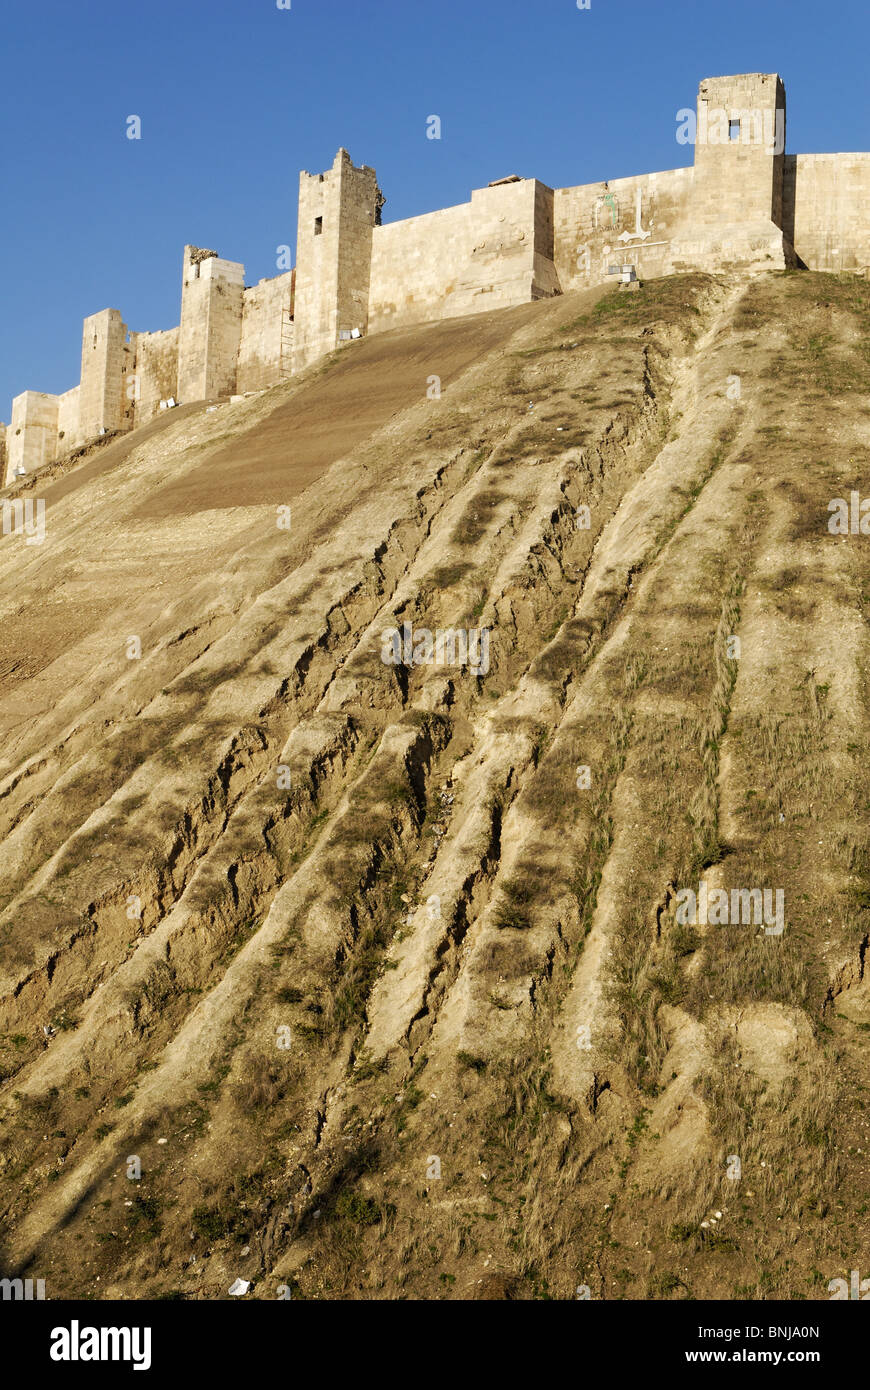 historische Zitadelle Aleppo Syrien Arabien Naher Osten alt alte Stadt Arabisch arabische Architektur Bastion Bastionen Gebäude Stockfoto